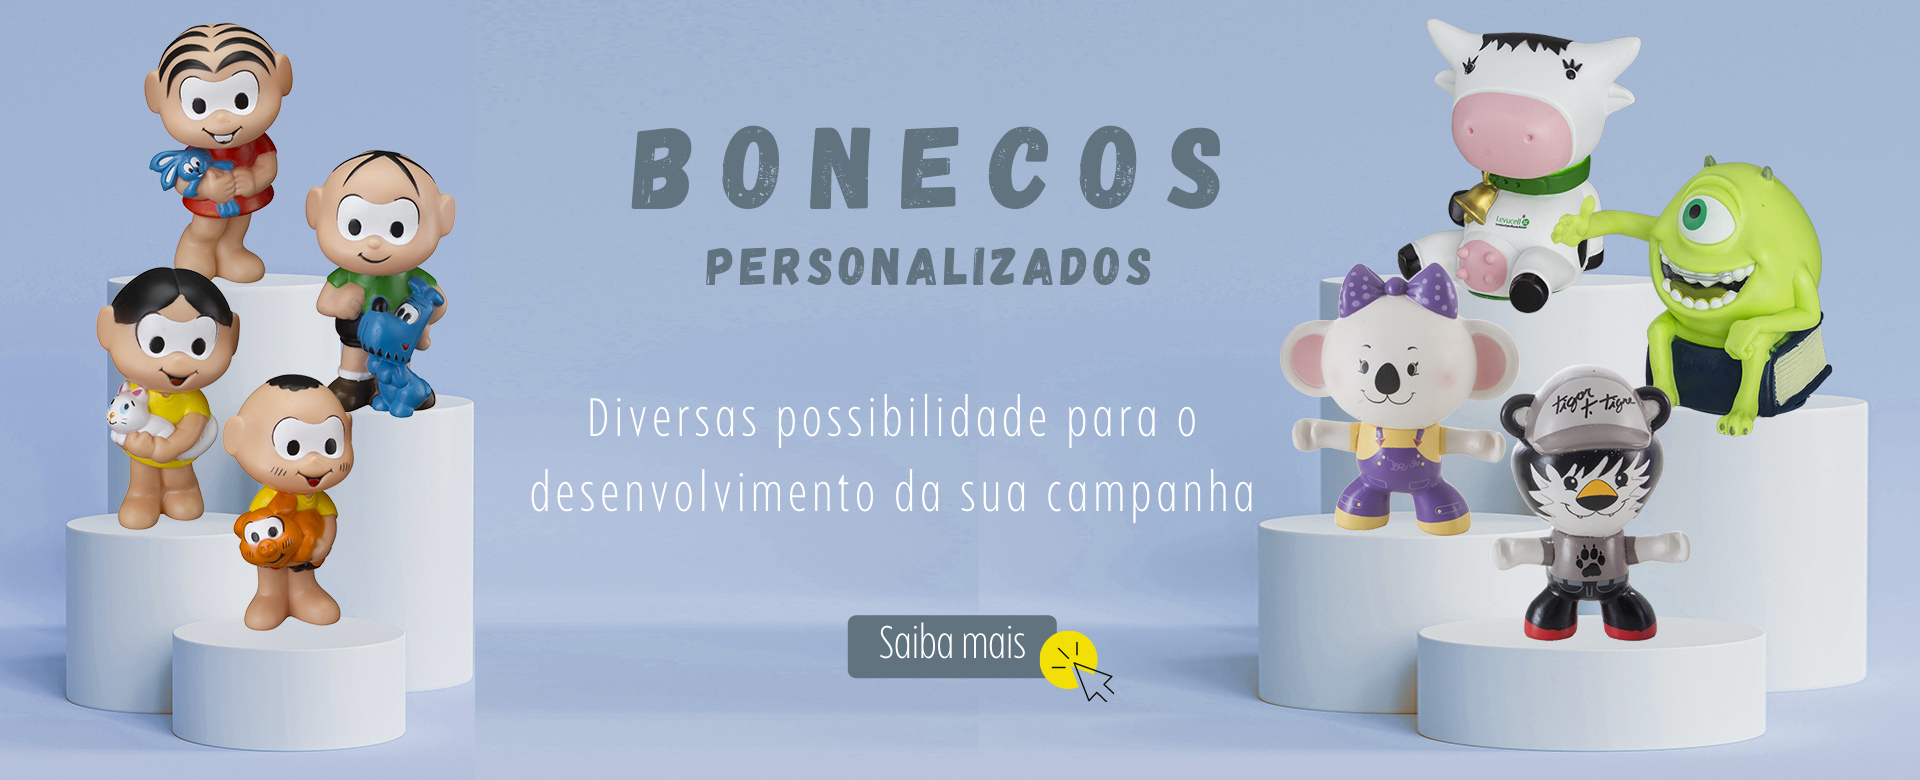 (Português) Bonecos Personalizados